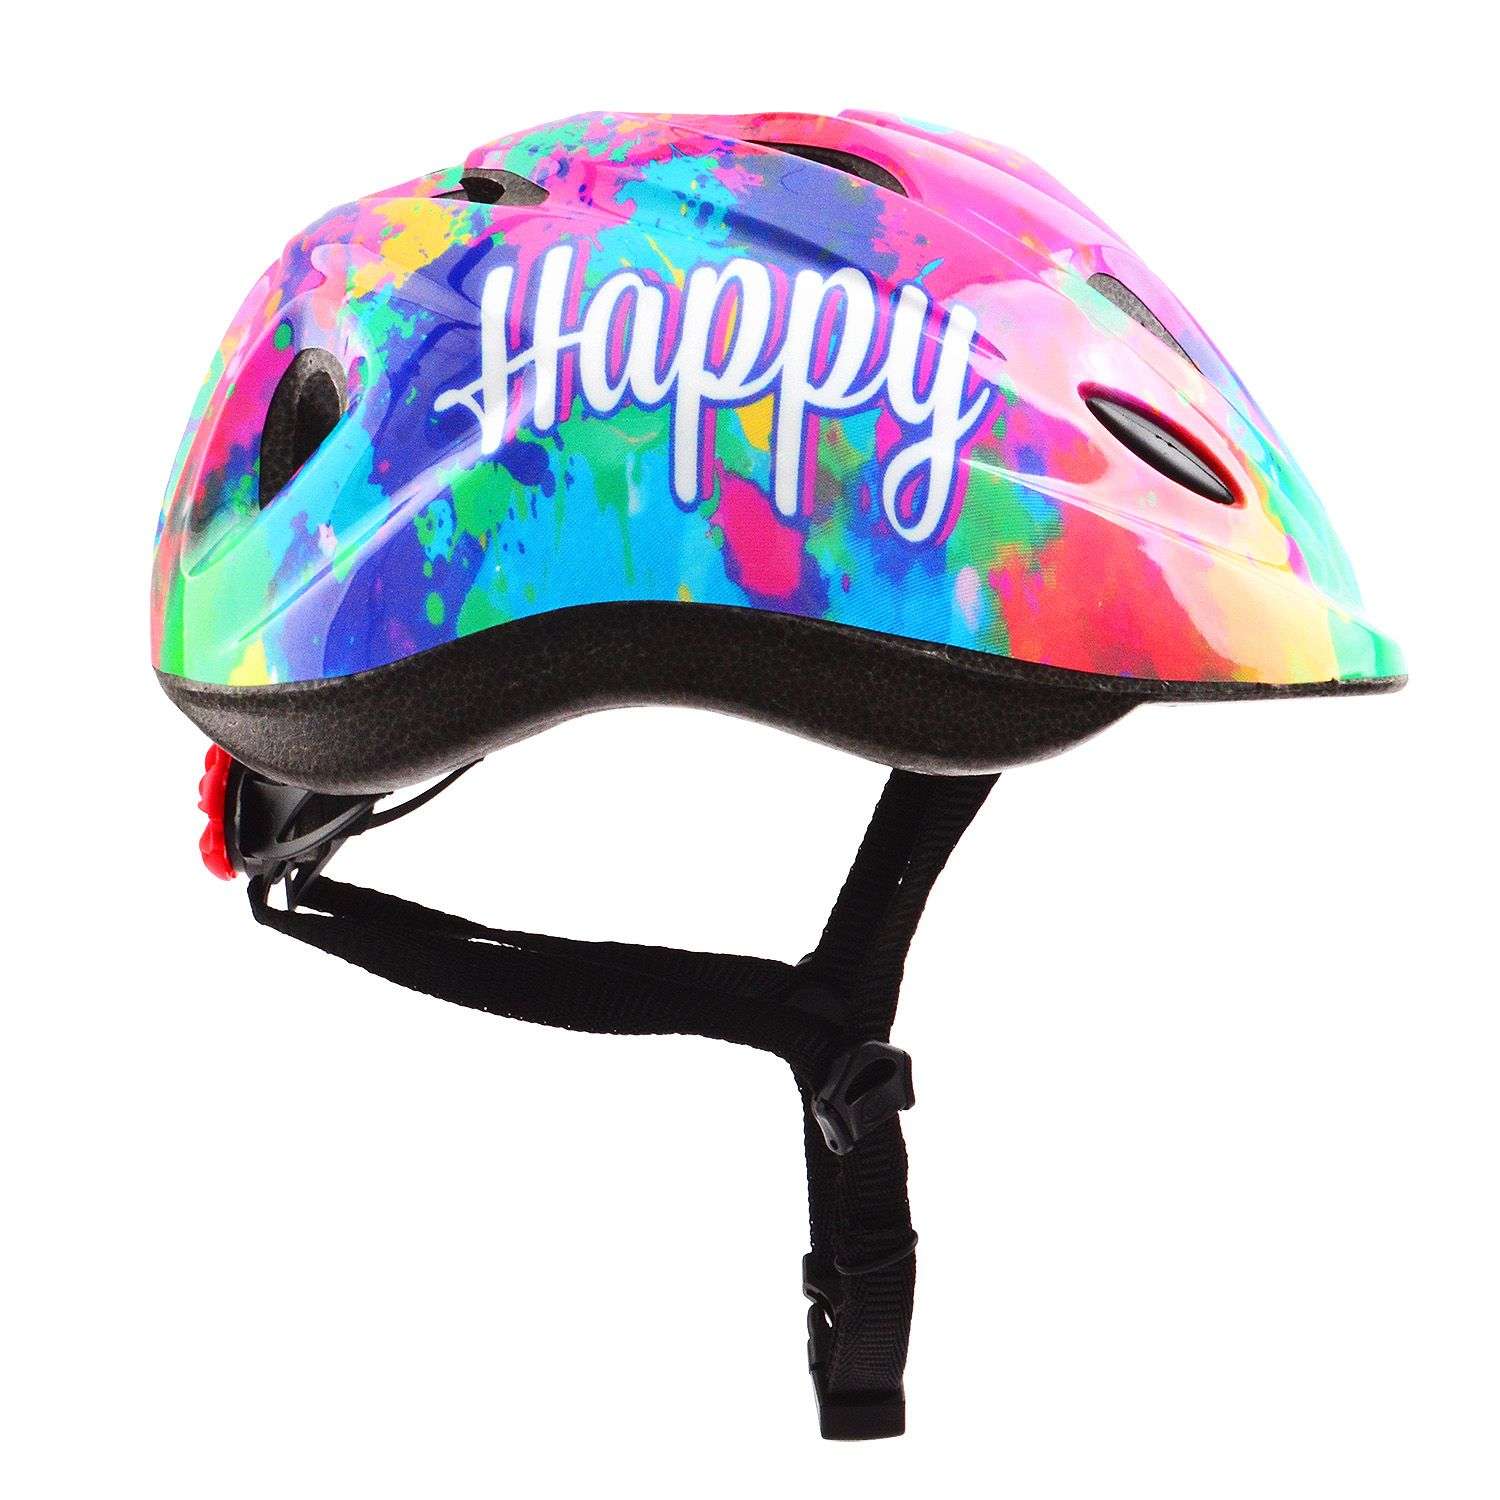 Шлем детский RGX Happy розовый с регулировкой размера (50-57) - фото 3